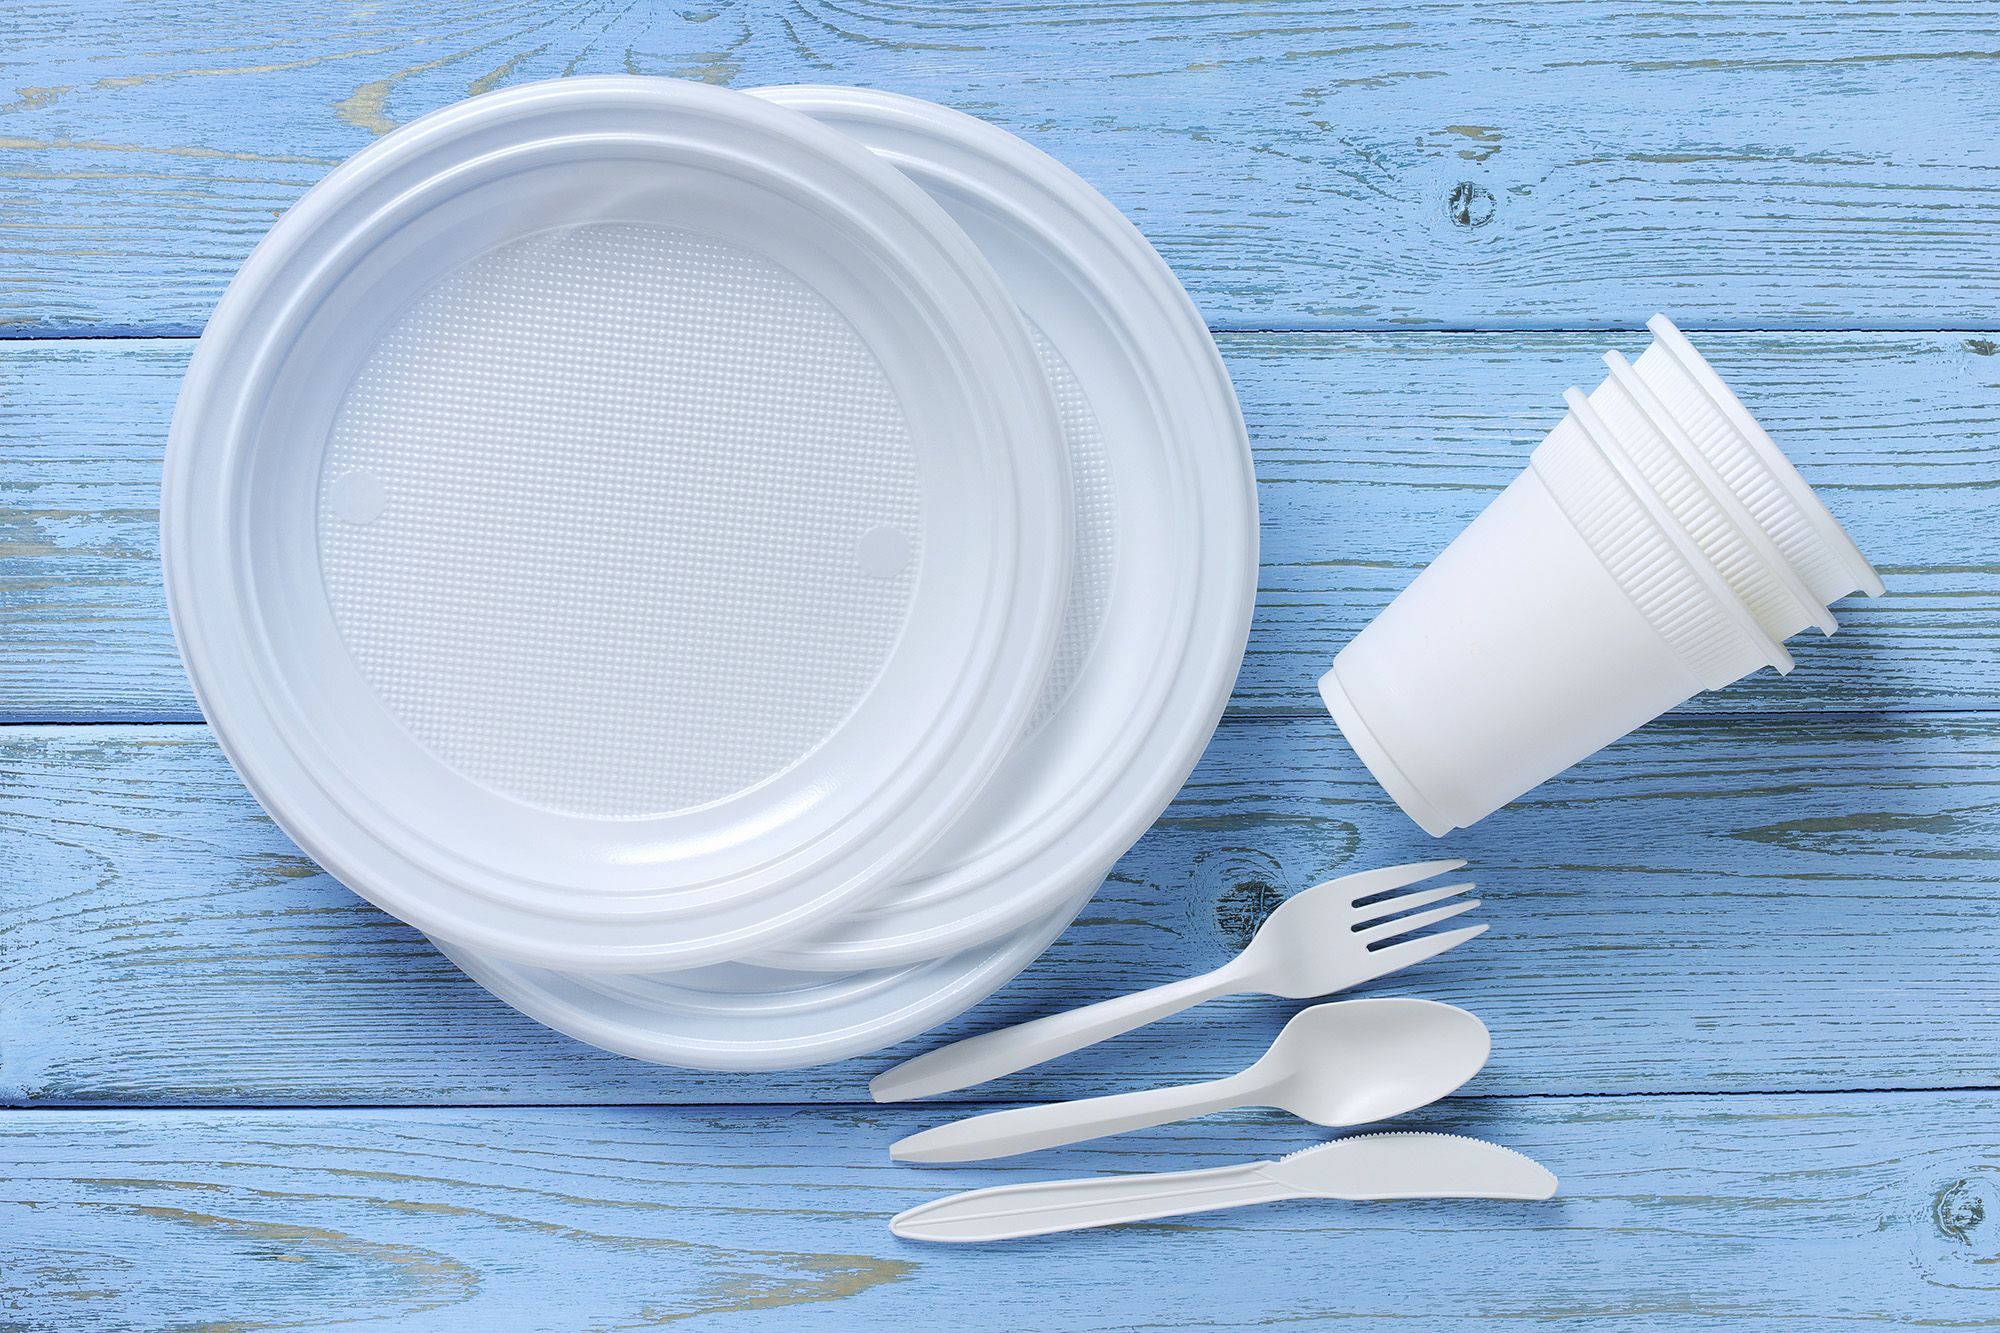 英国将禁止使用一次性塑料餐具 95%公众支持 